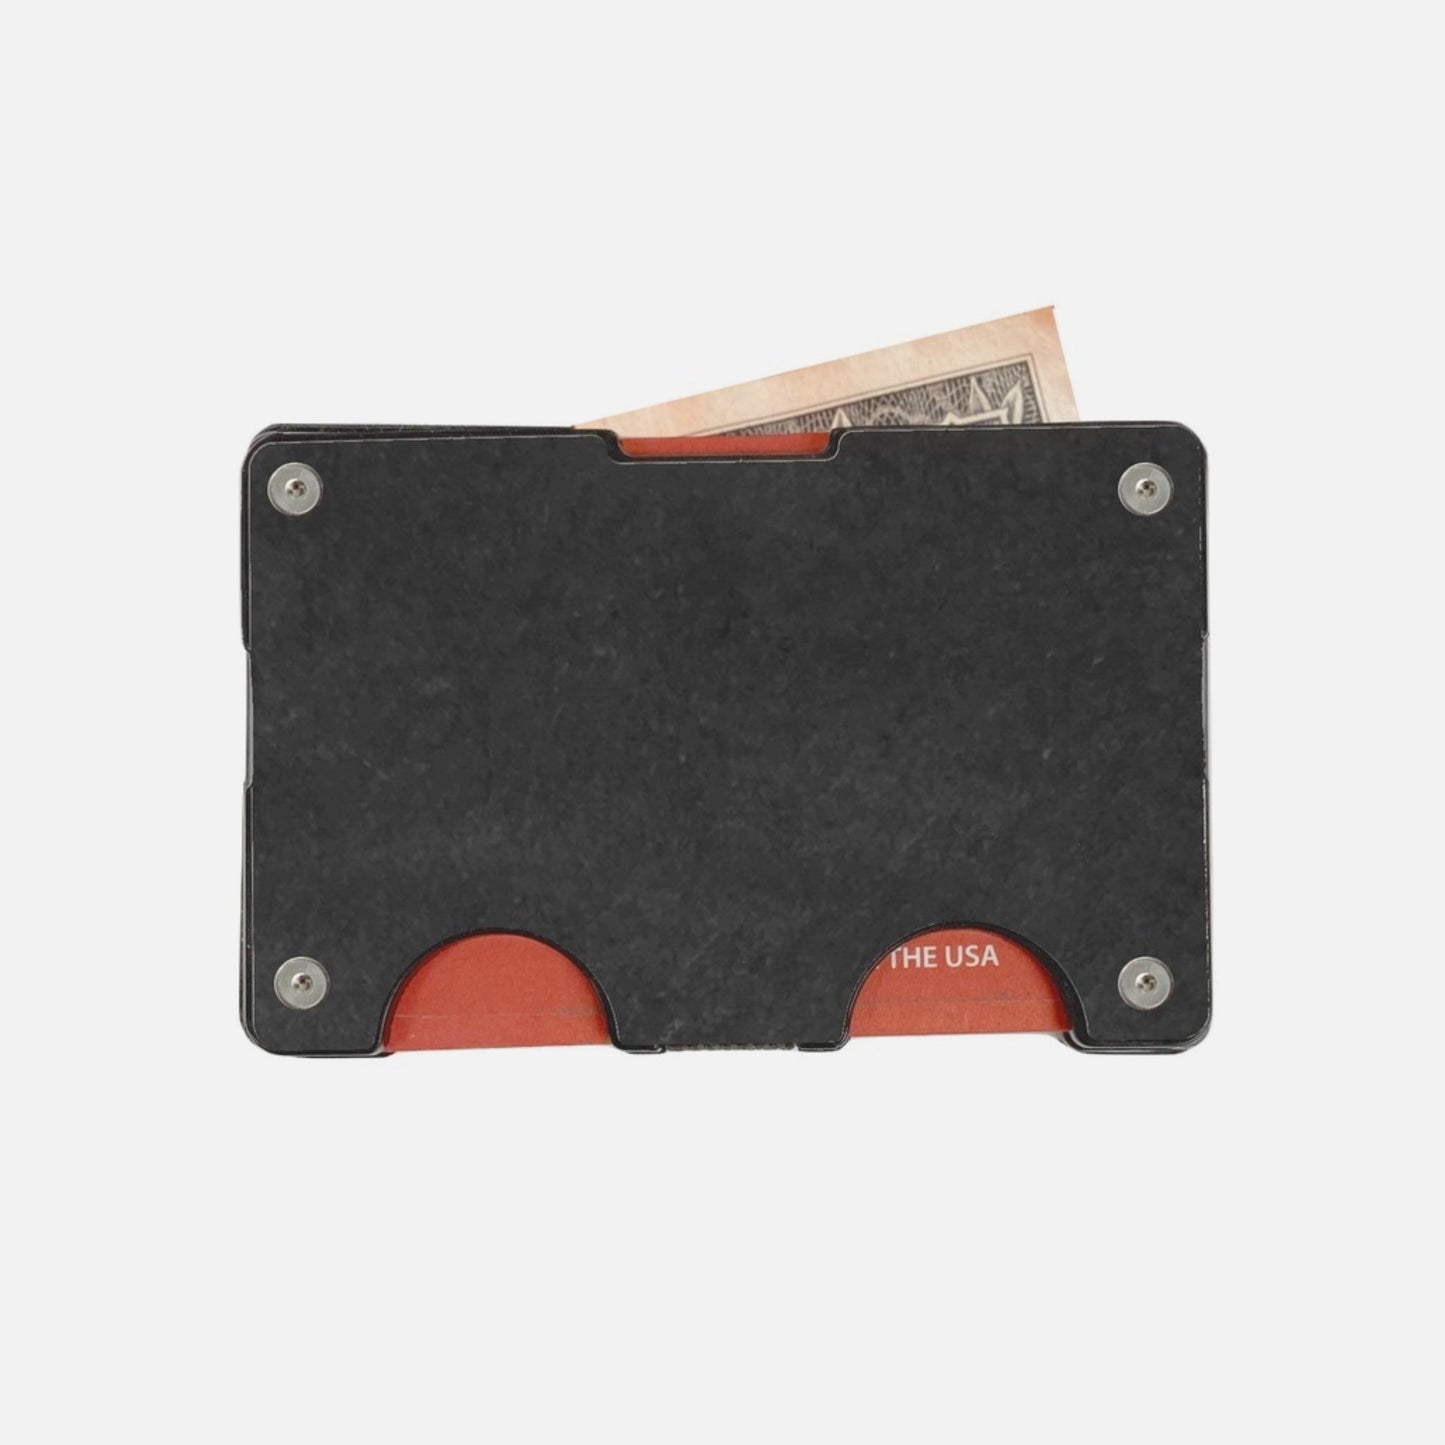 Rift Wallet - Slim Metal RFID Blocking - Made in the USA